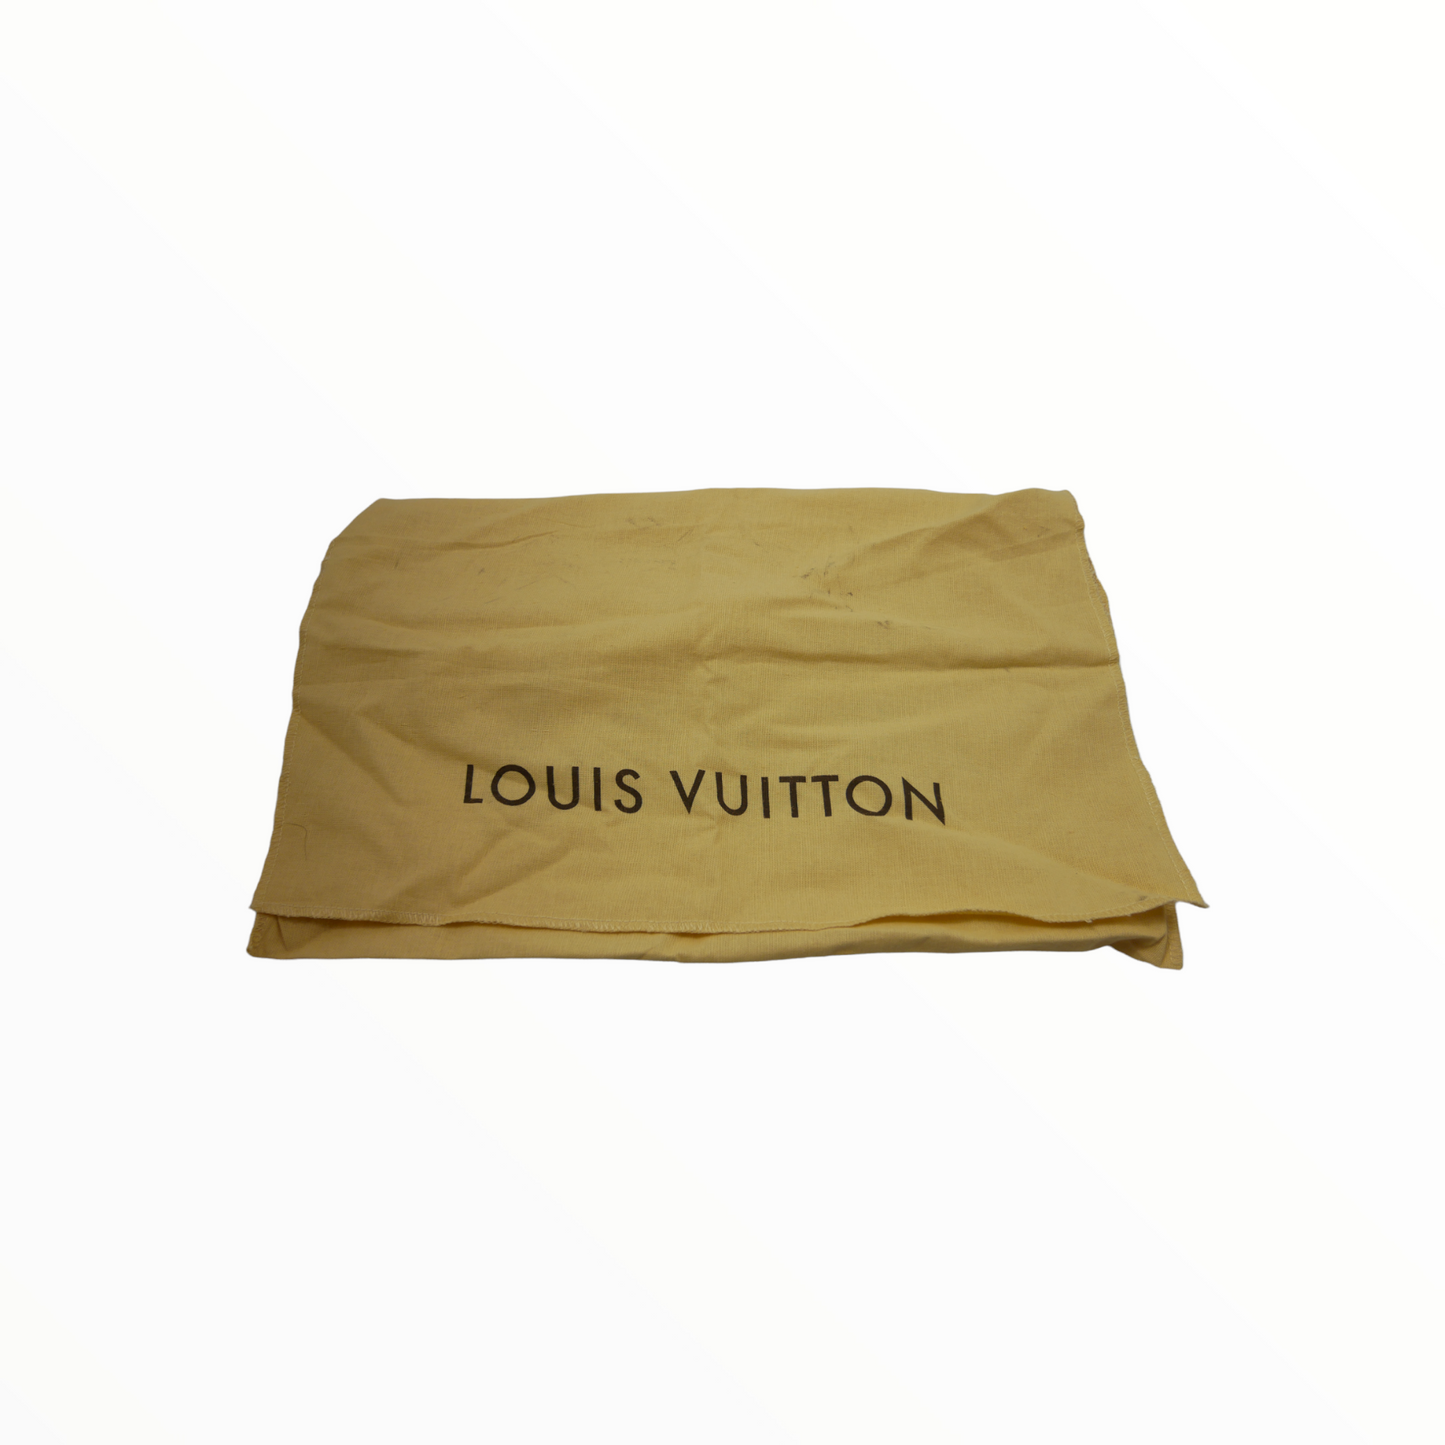 <tc>Sac à dos monogramme Louis Vuitton vintage modèle Marelle</tc>